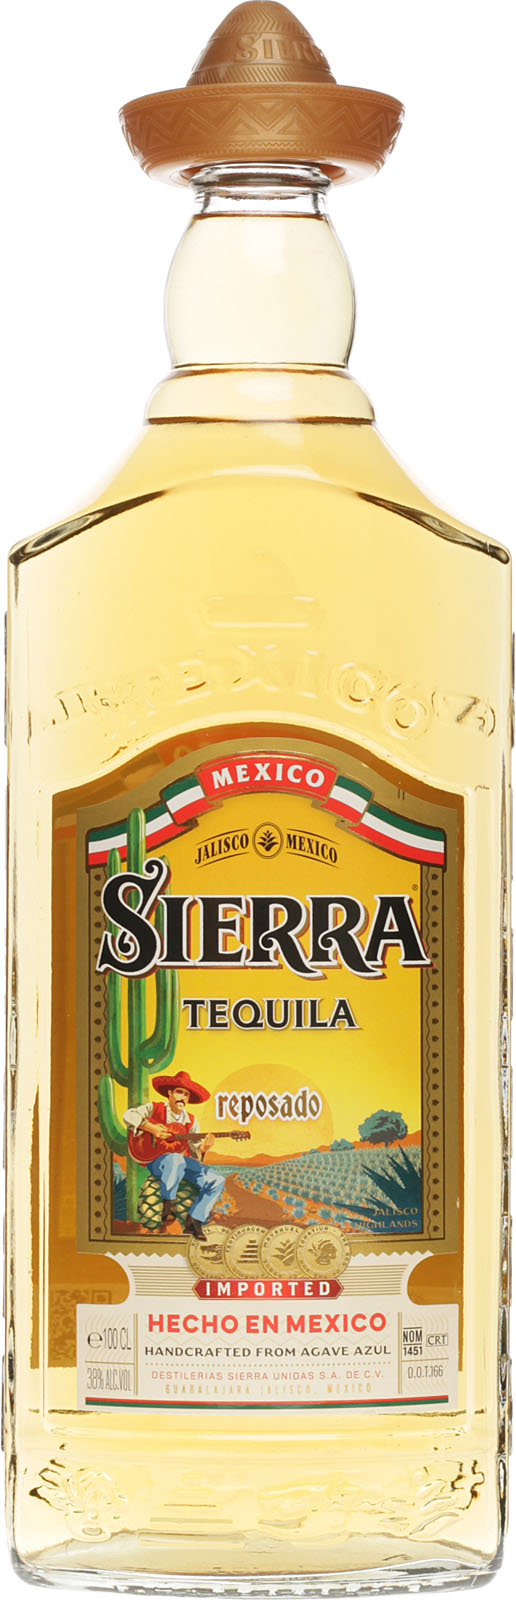 Sierra Reposado Tequila 1 aus Liter 38% Vol., M Tequila